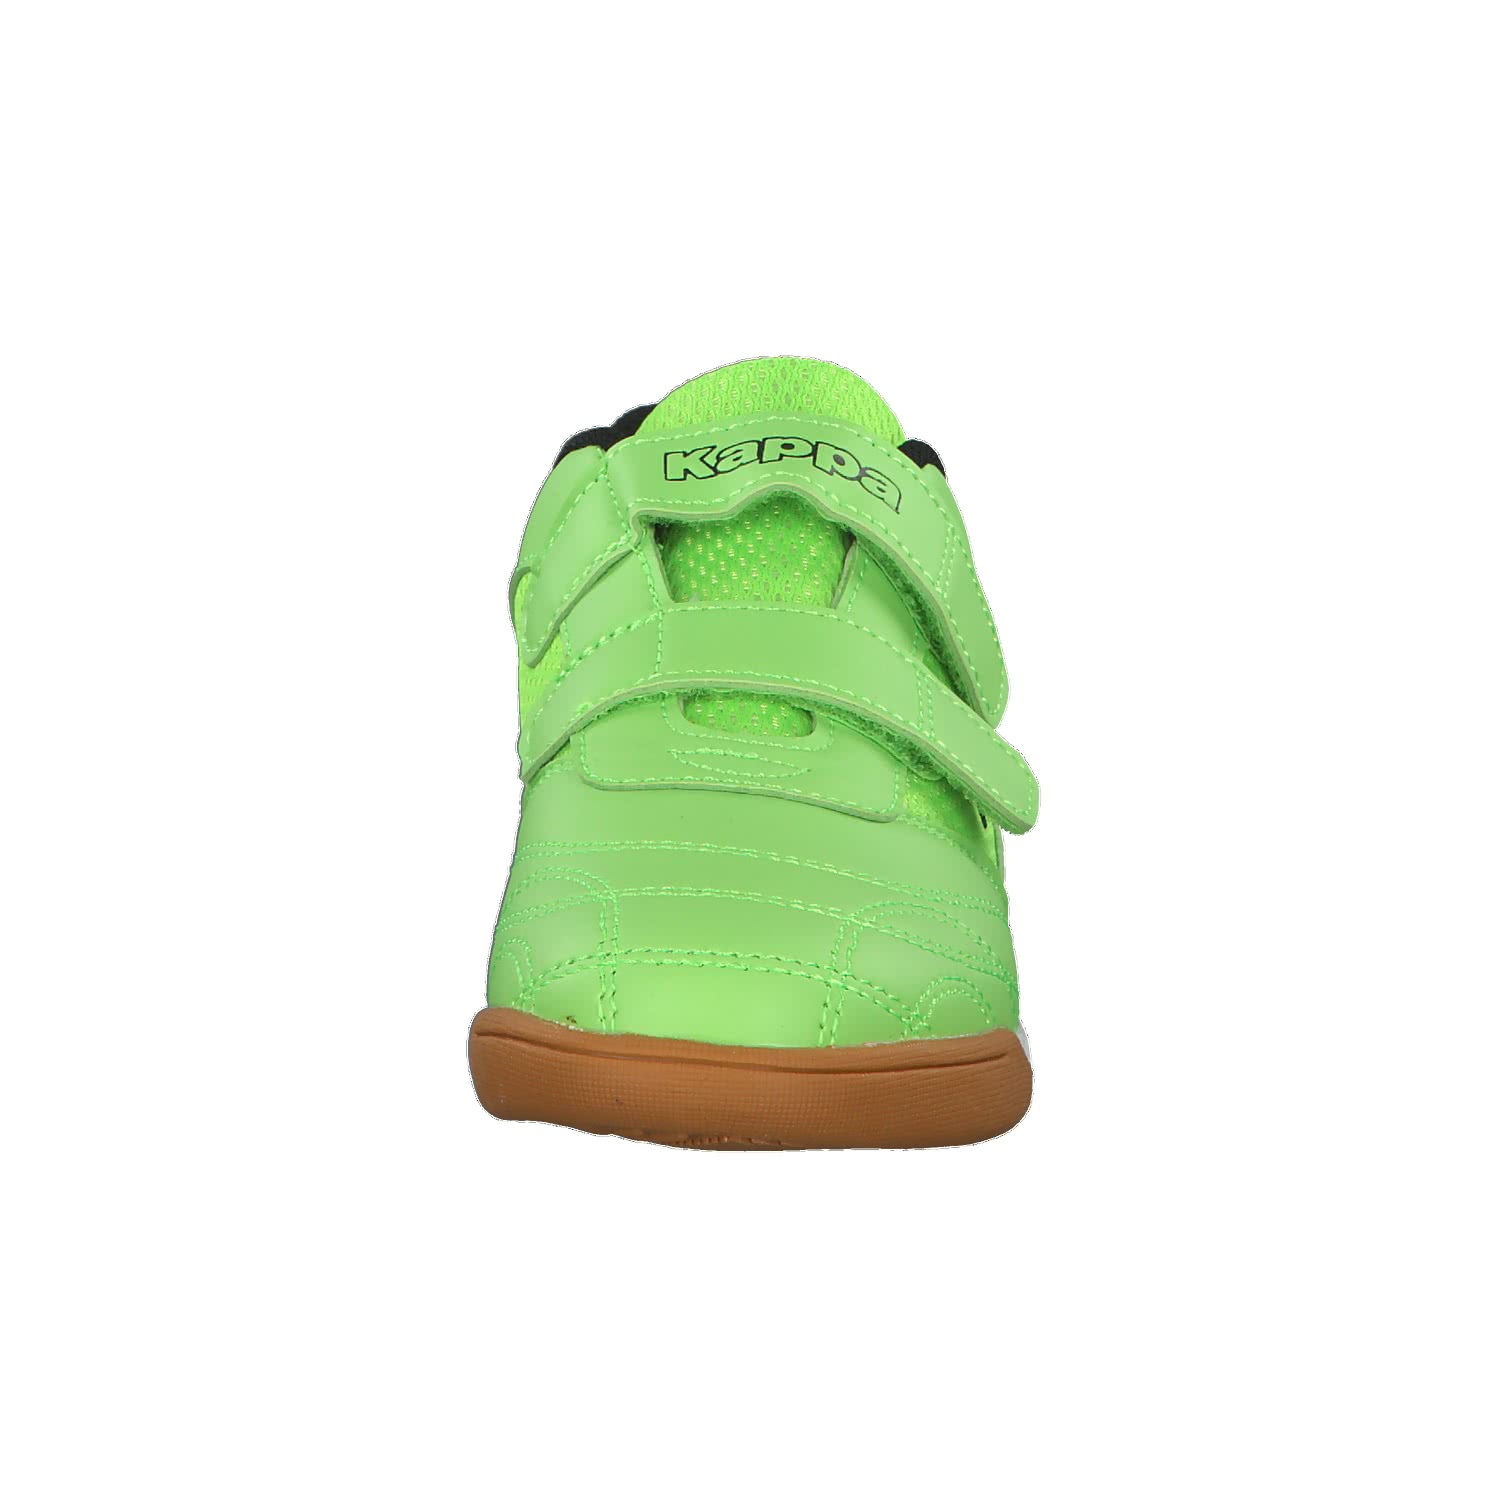 KAPPA Jungen Sneaker royalblau Gr.31 mit Klettverschluss NEU mit Etikett  online kaufen | eBay